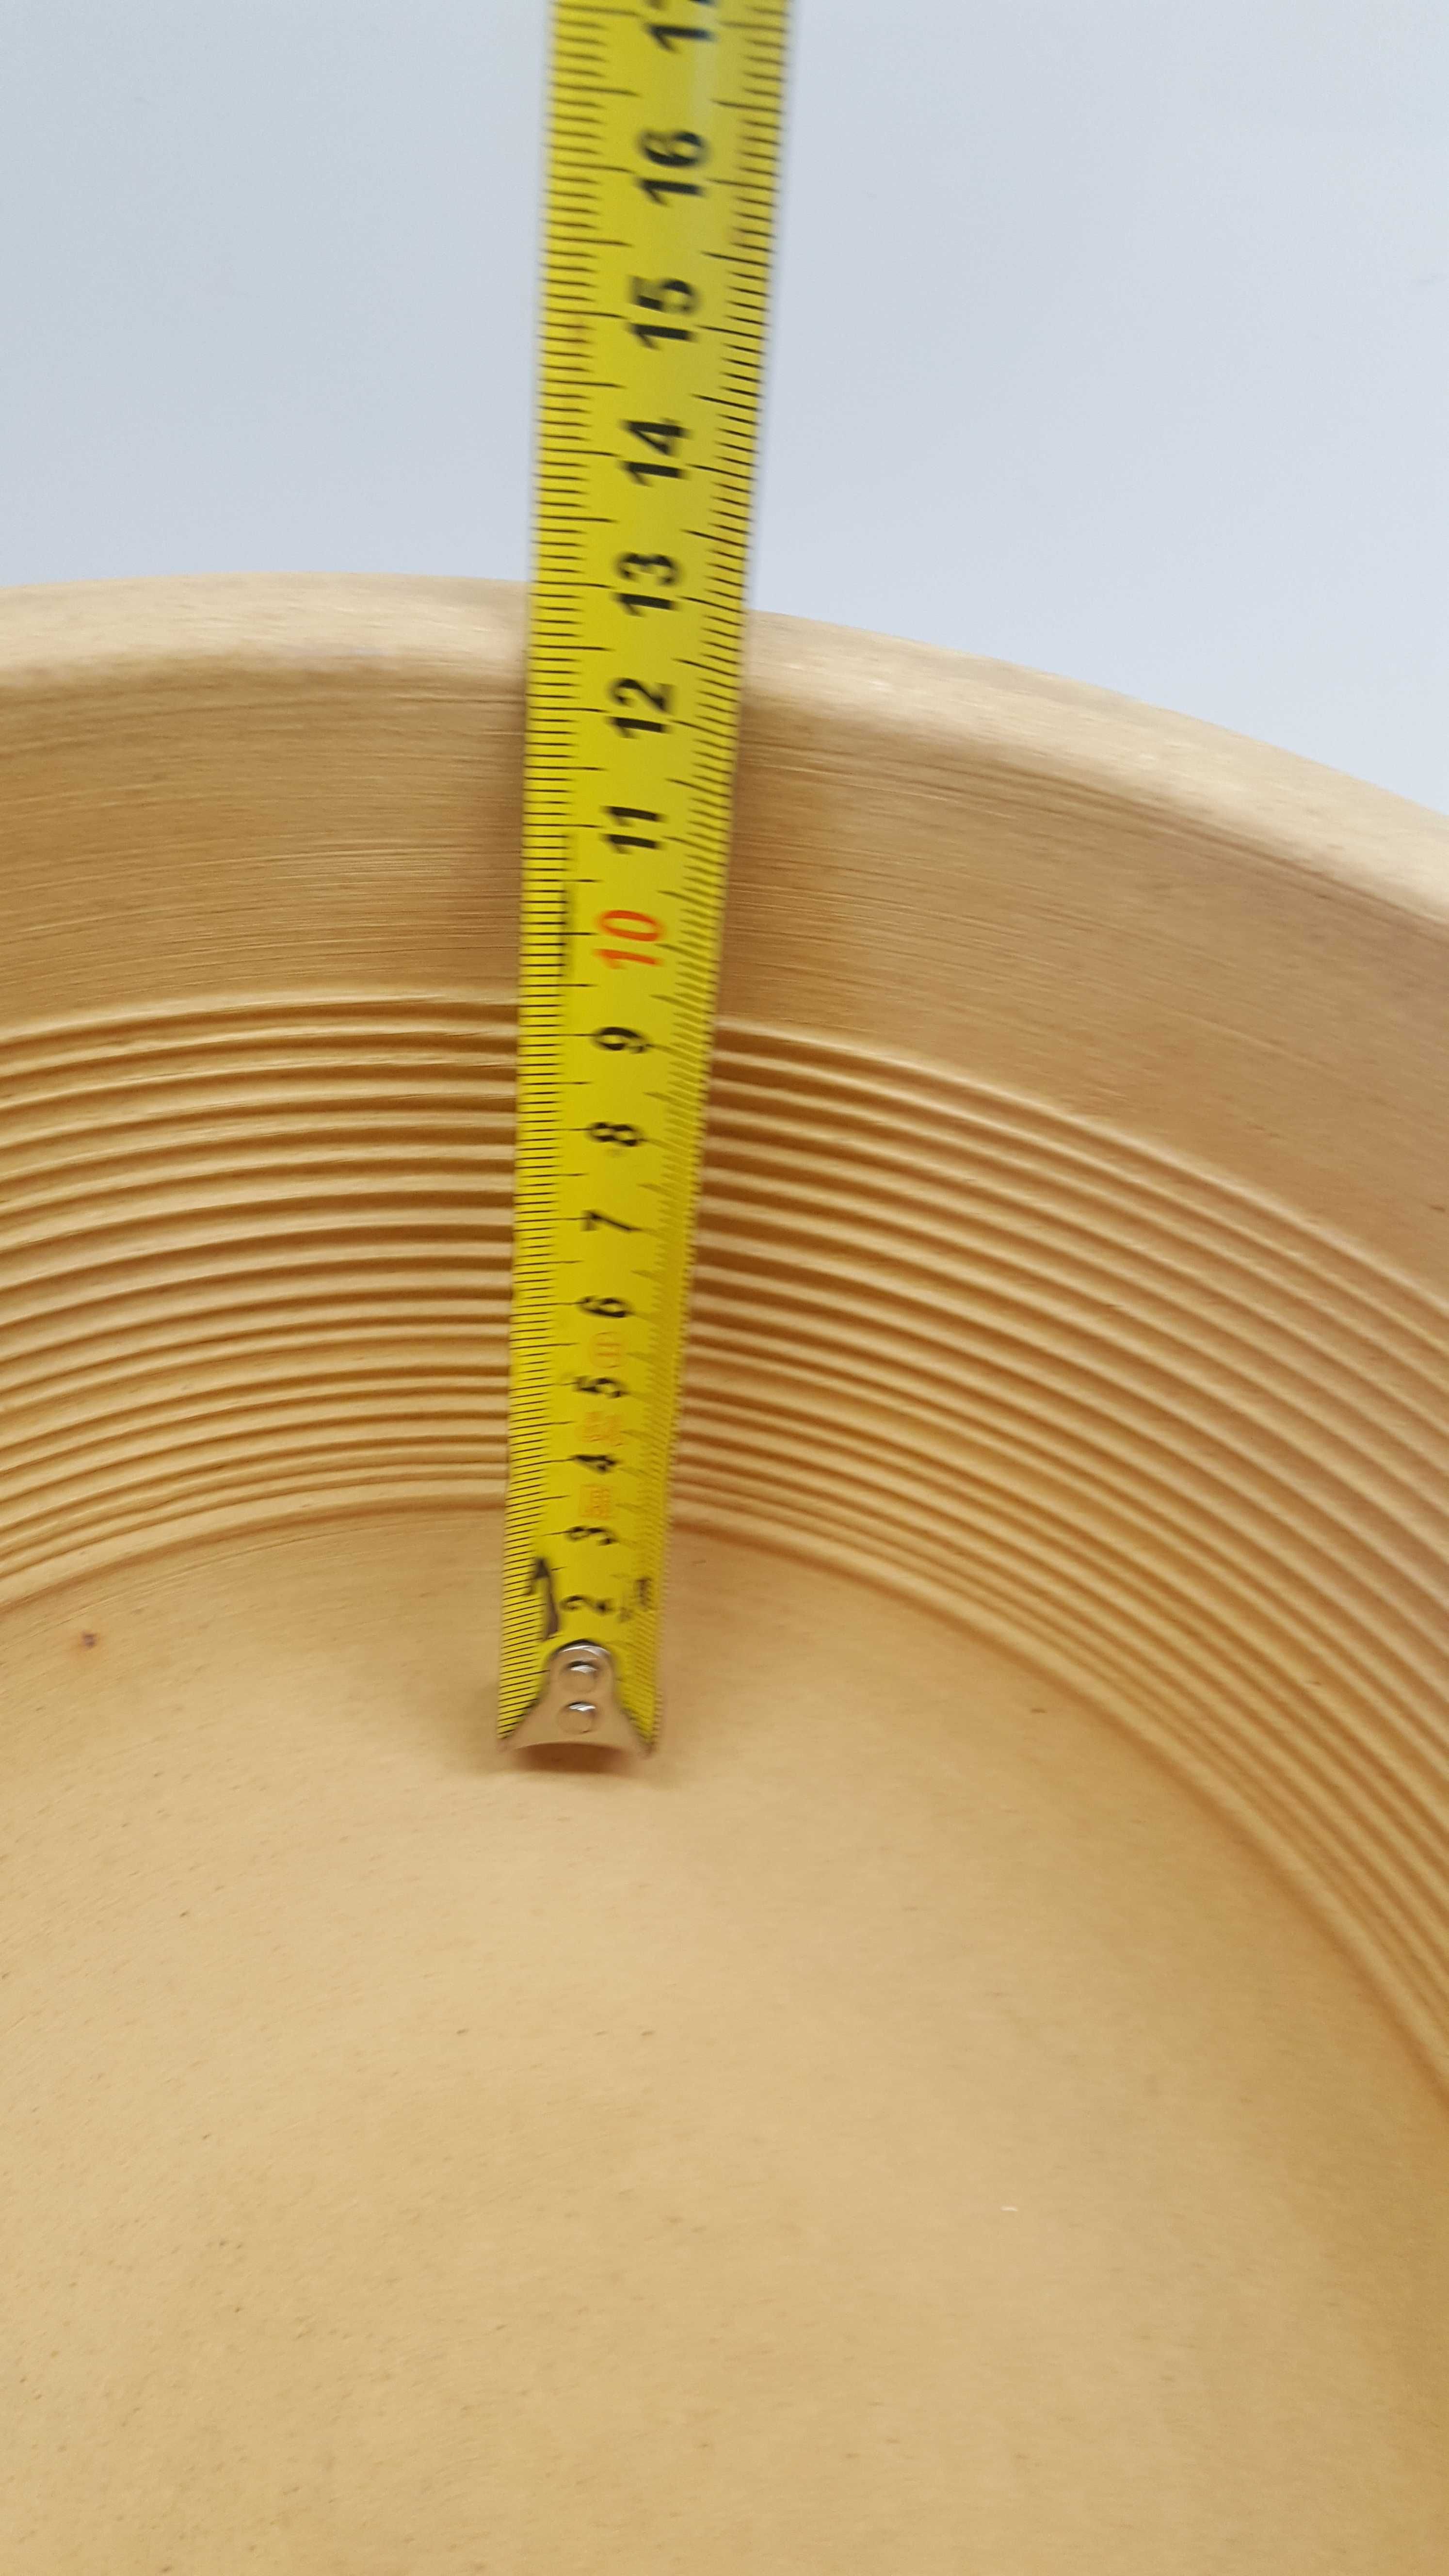 makutra ceramiczna jasne wnętrze wewnątrz 24cm -produkcja polska